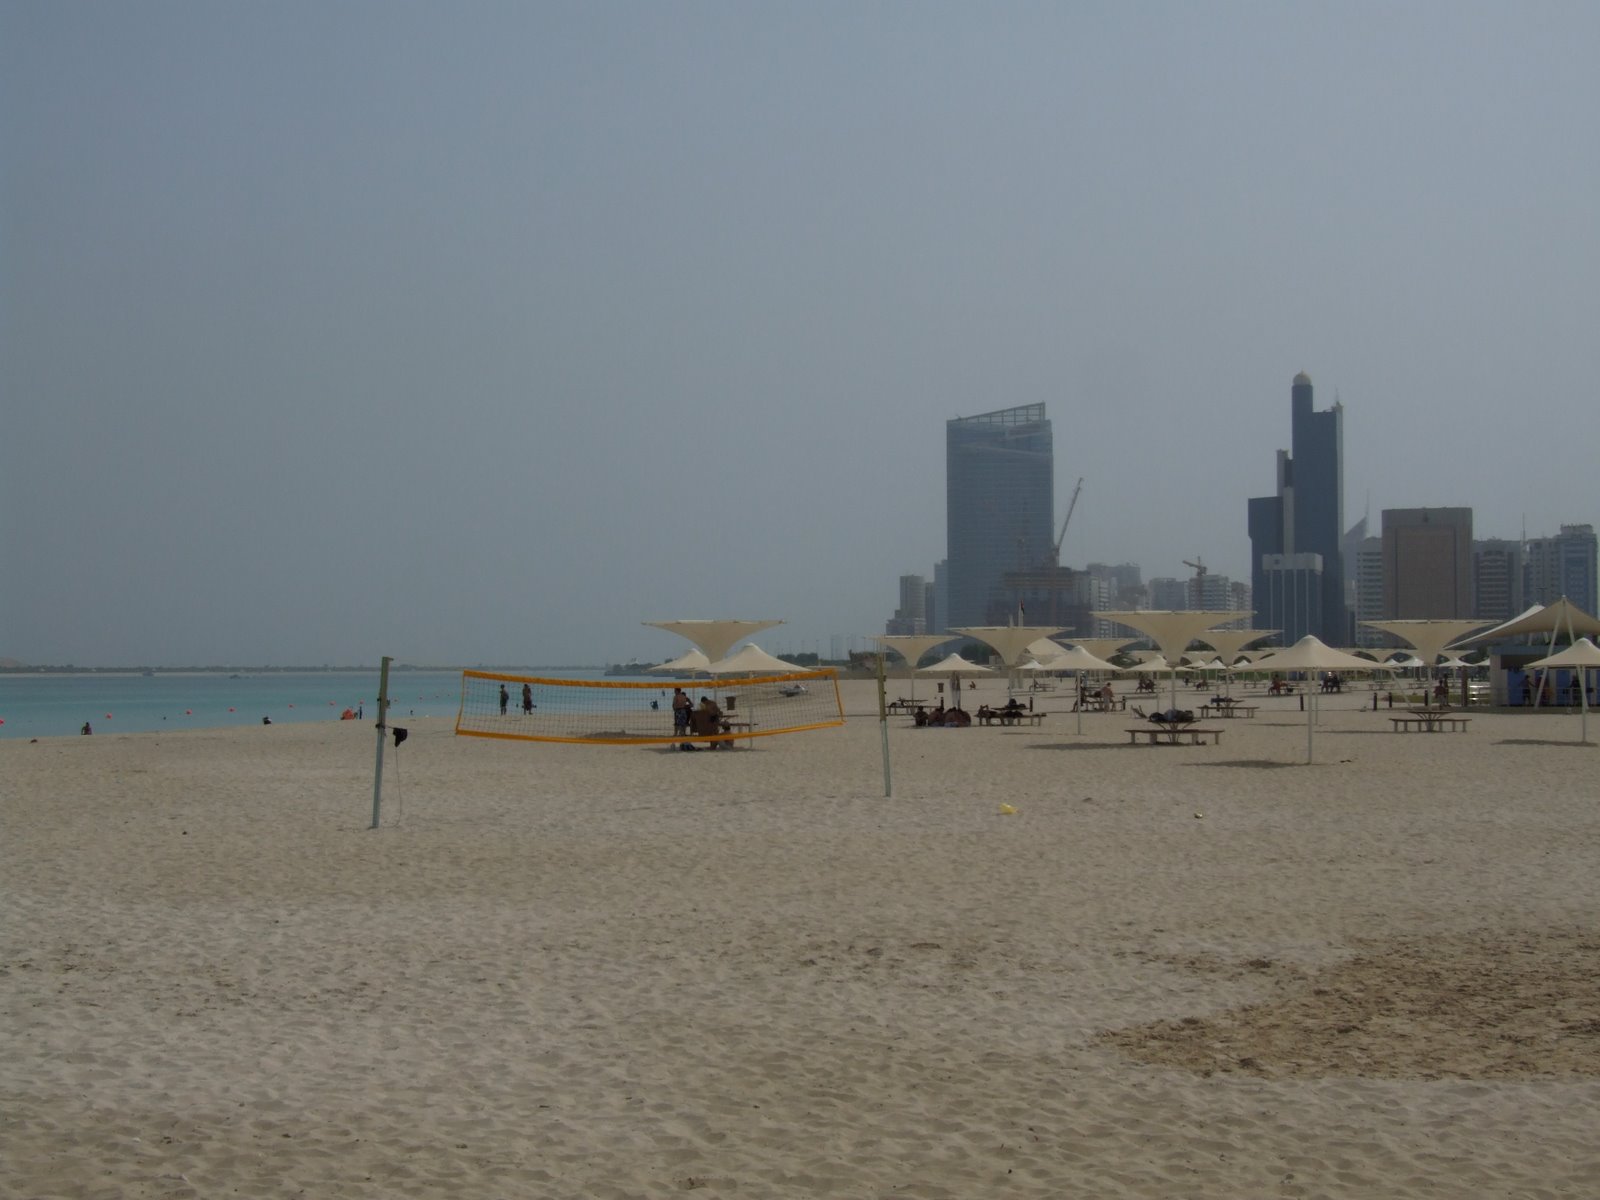 [Abu+Dhabi+Beach+7+DSCF3937.JPG]